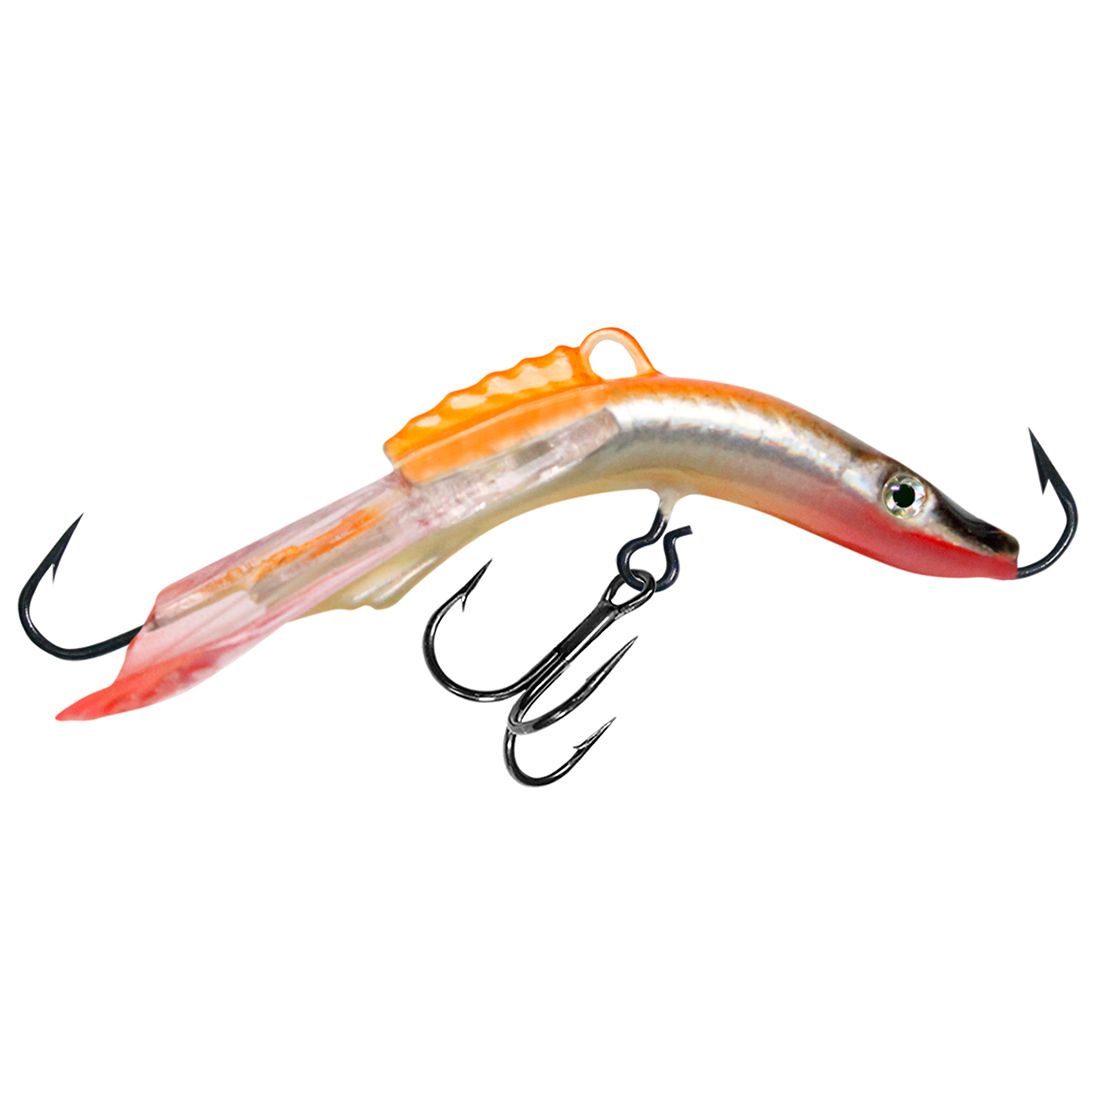 фото Балансир для рыбалки aqua acrobat-3 50mm цвет 102 оранжевая спинка, 1 штука